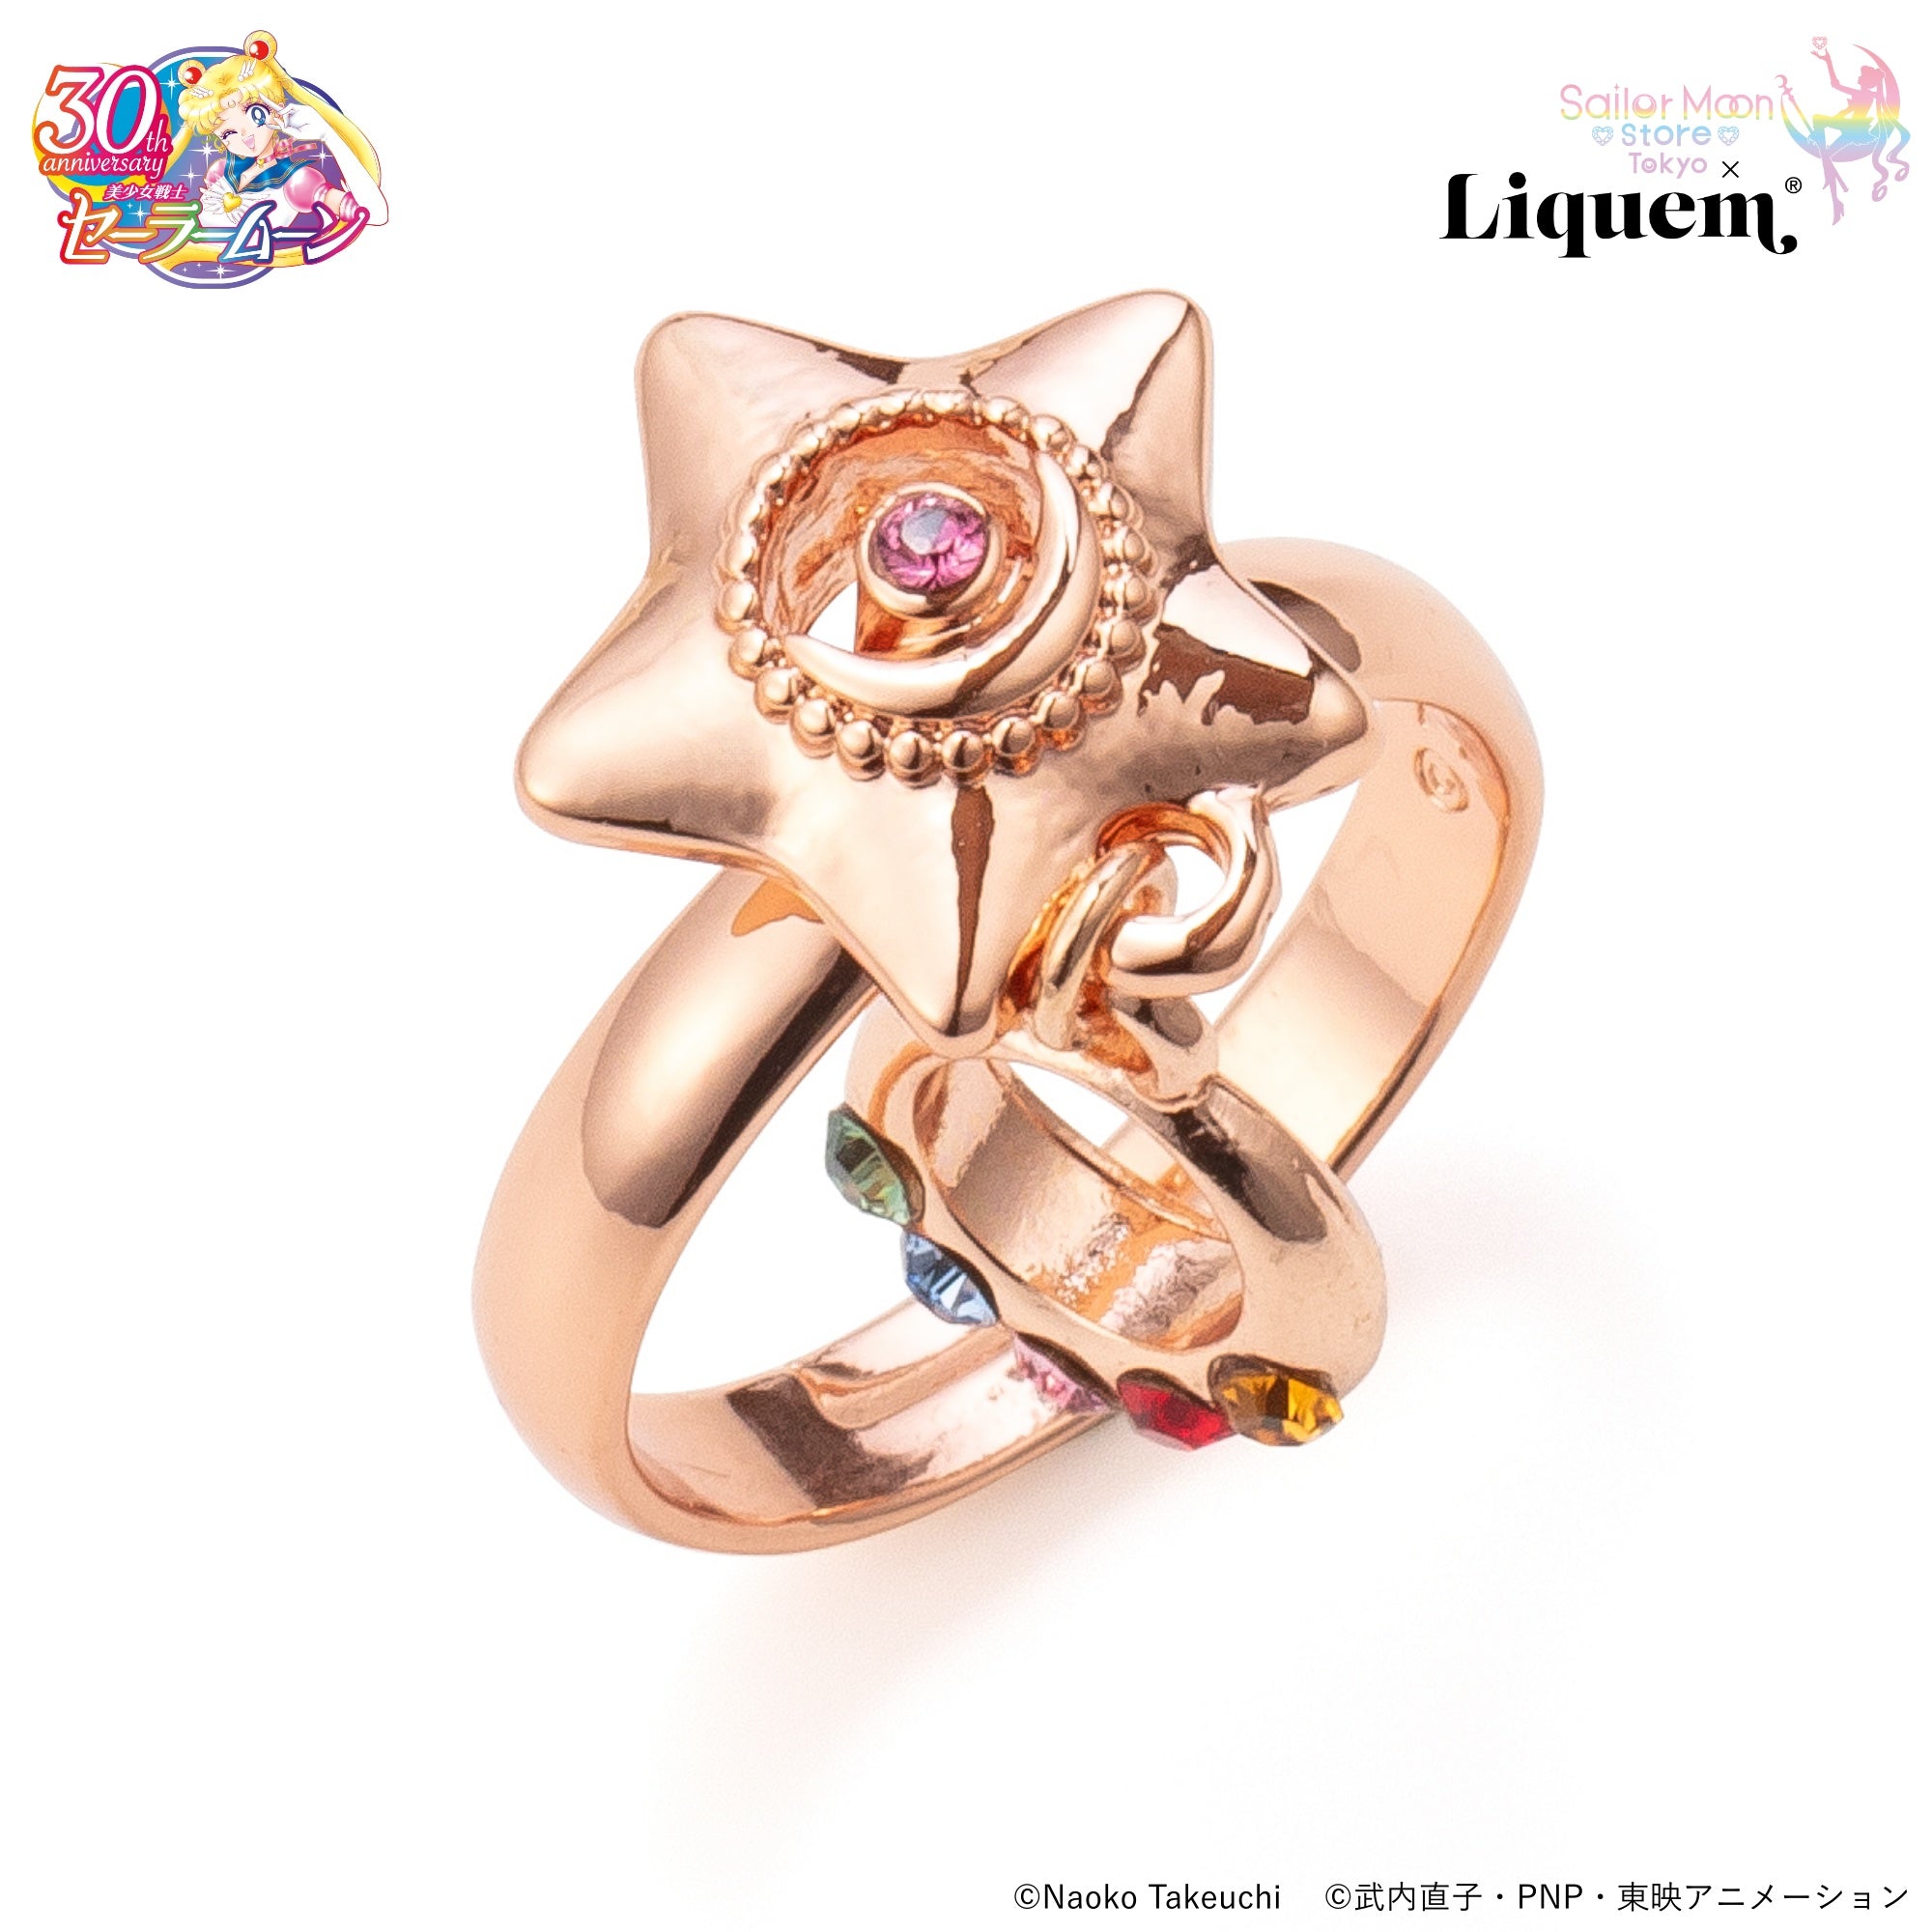 Sailor Moon store x Liquem / 星空のオルゴールリング(PKGLD)